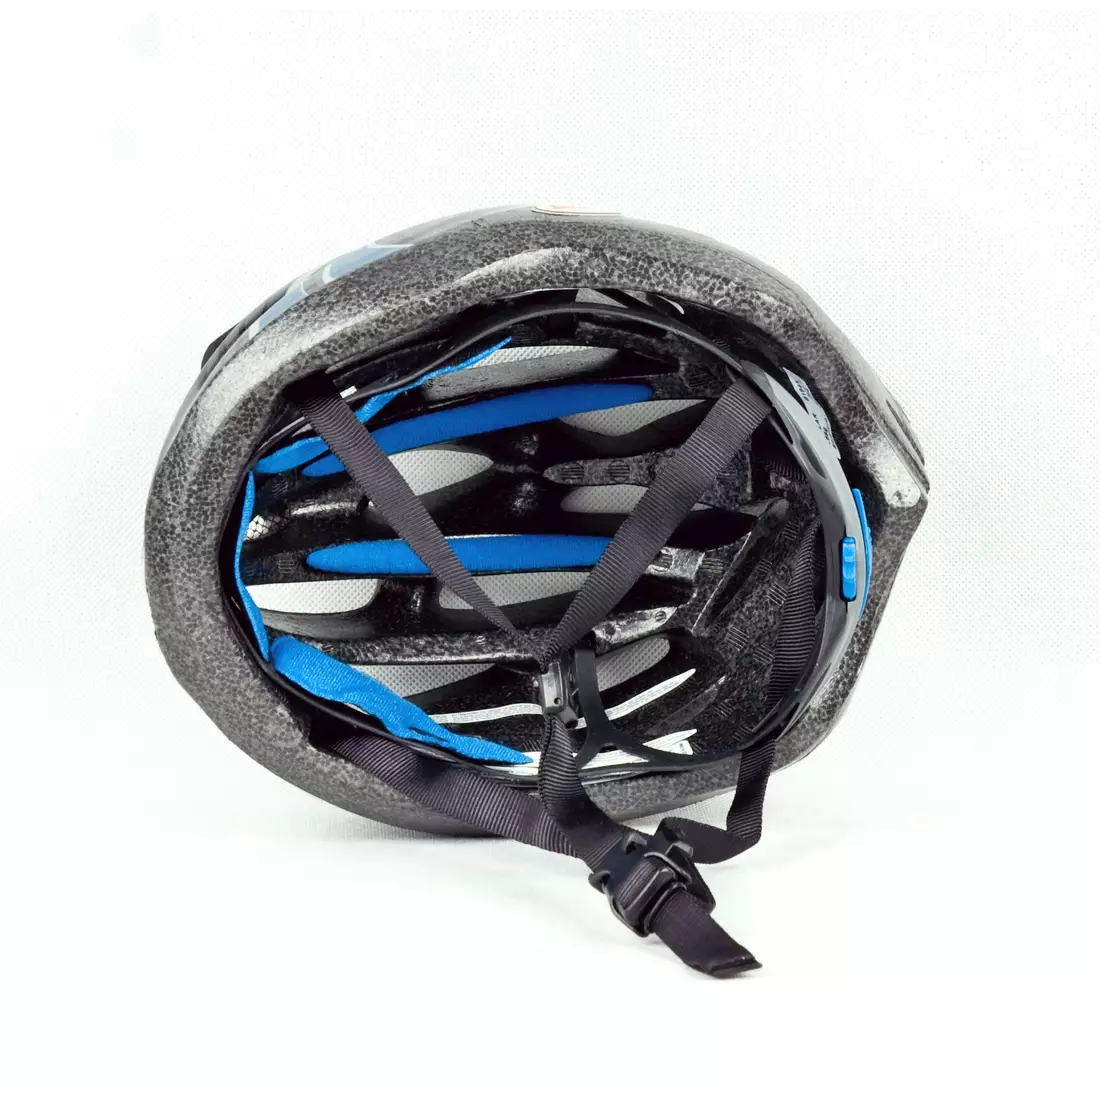 BELL SOLAR - Fahrradhelm, schwarz und blau